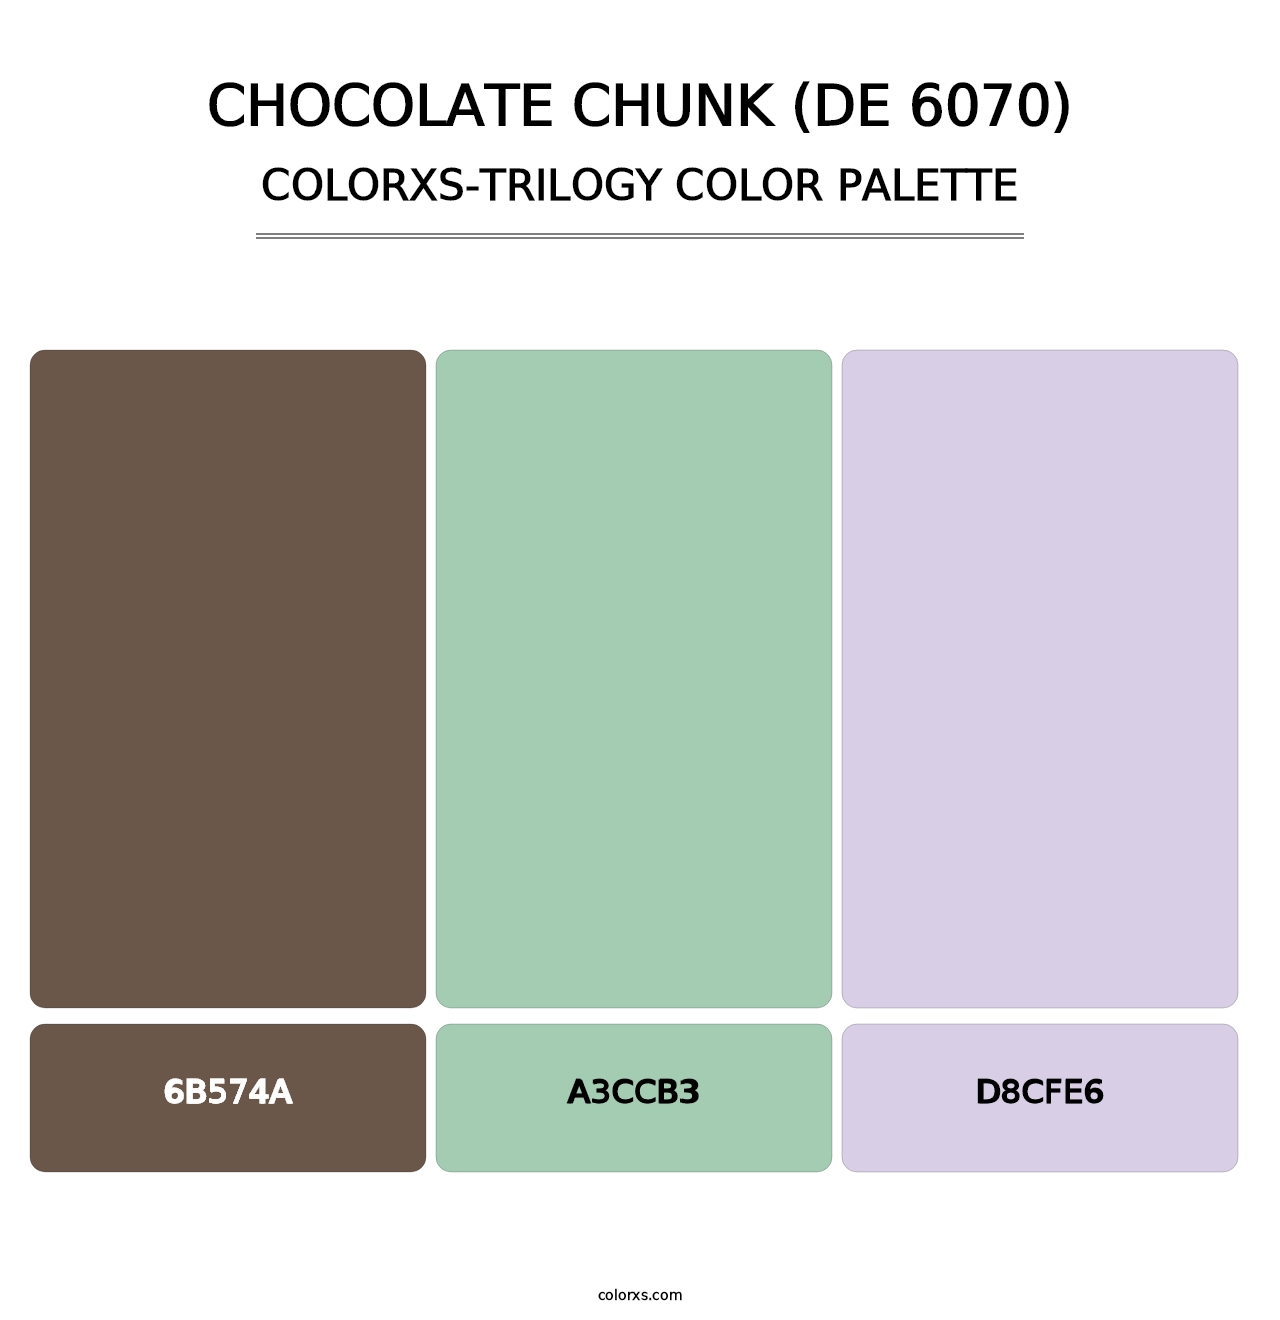 Chocolate Chunk (DE 6070) - Colorxs Trilogy Palette